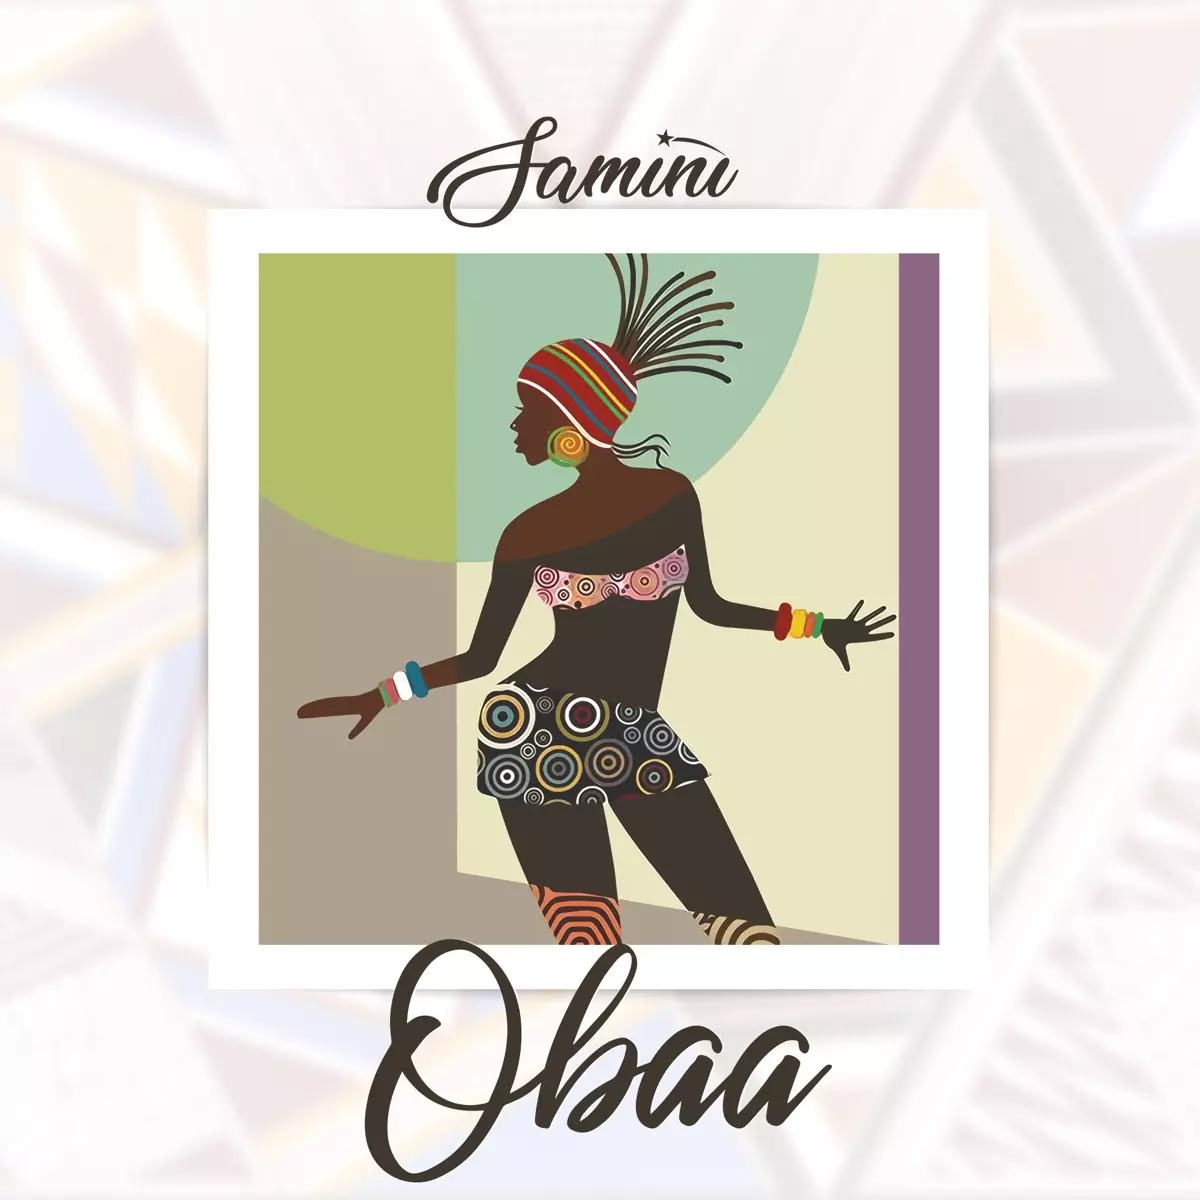 Obaa - Single by Samini on Apple Music